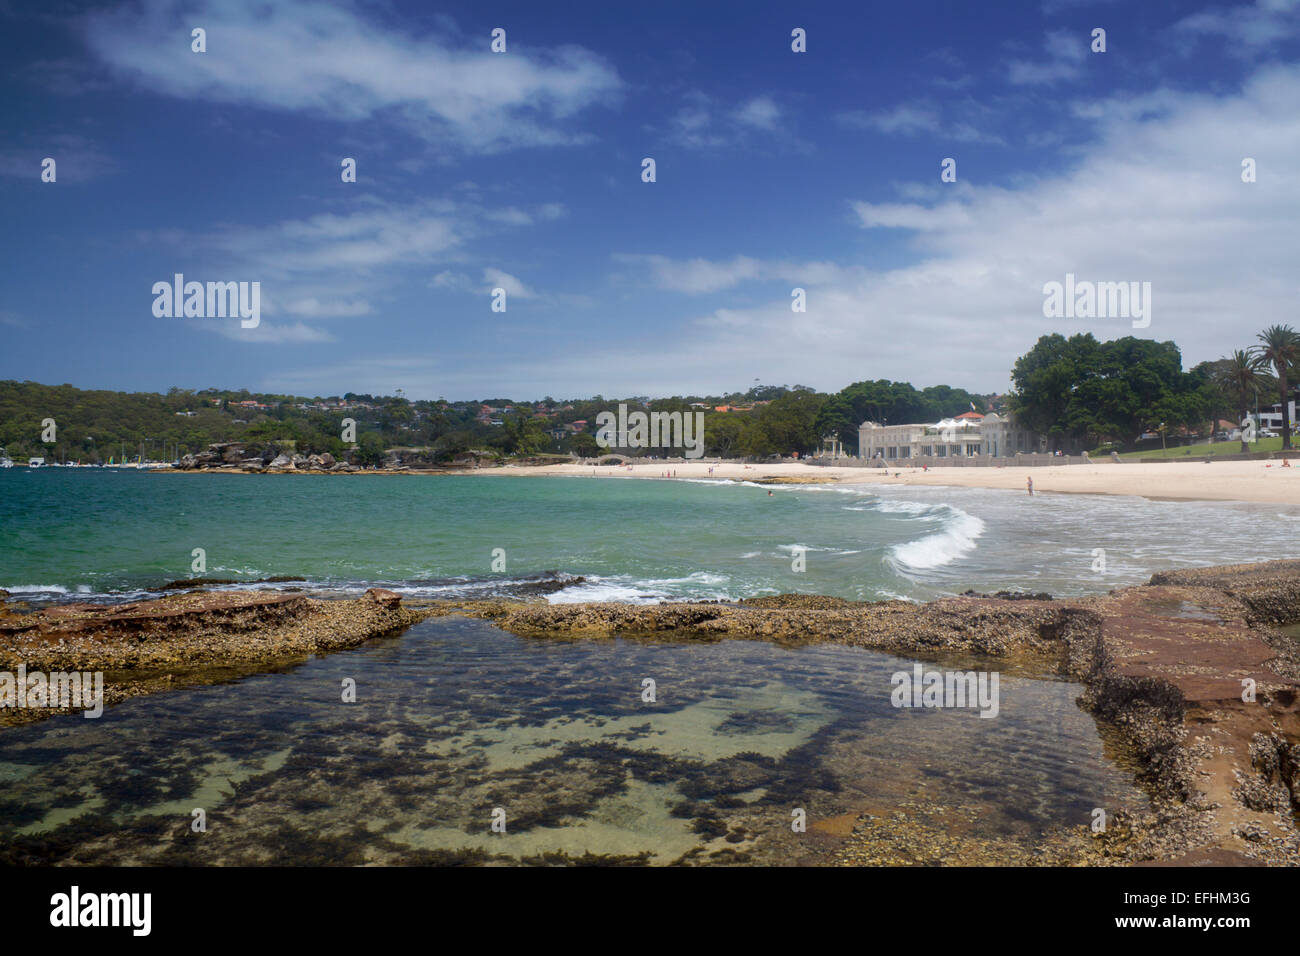 Balmoral Beach et baigneurs pavillon avec piscine dans les rochers en premier plan Le Port de Sydney Sydney NSW Australie Nouvelle Galles du Sud Banque D'Images